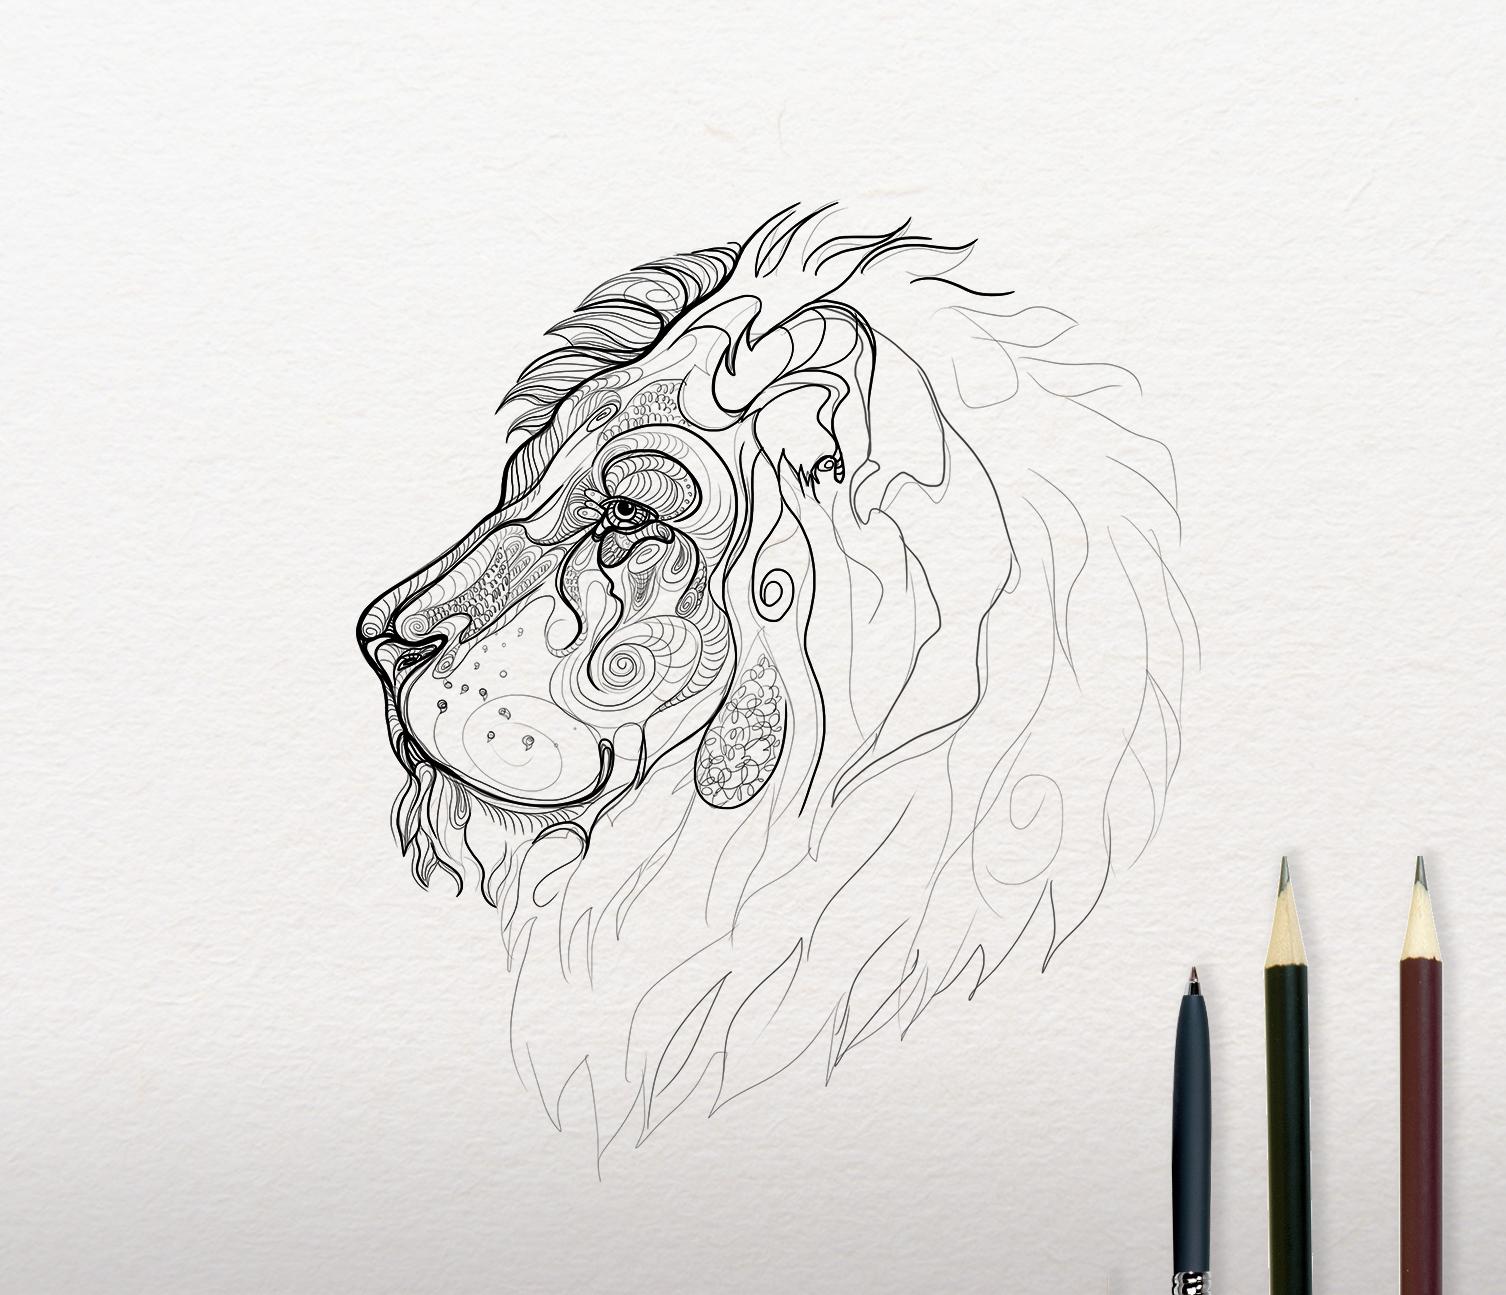 Sketch of Lion design